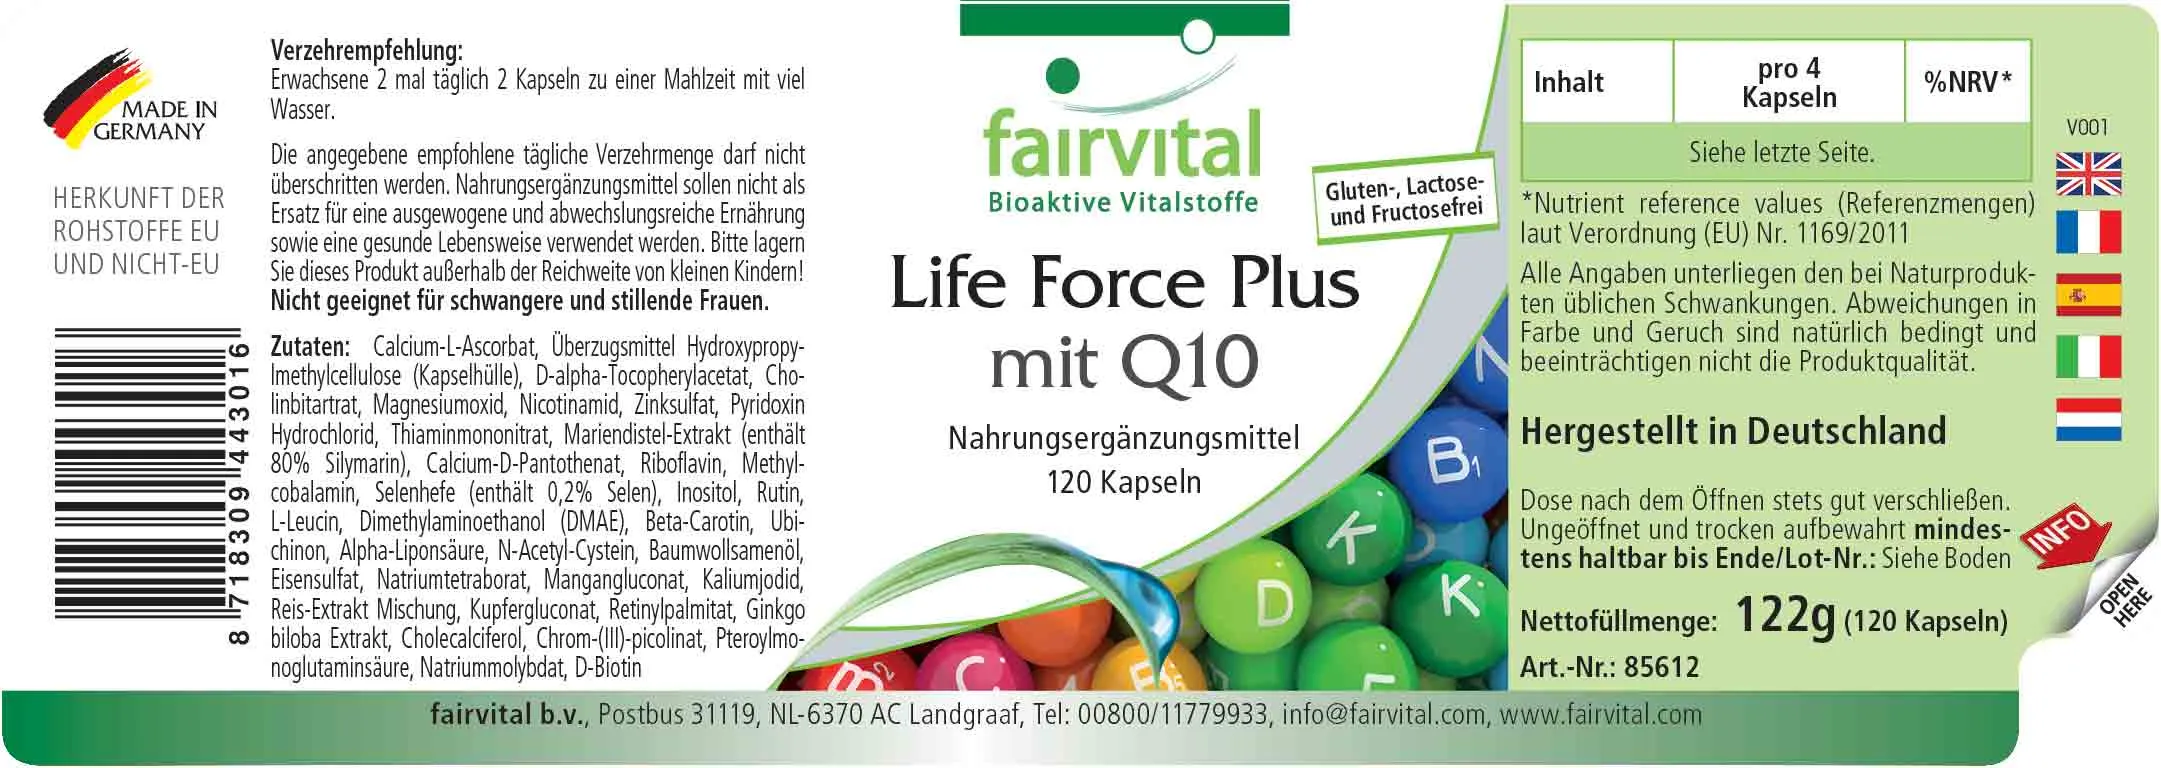 Life Force Plus avec Q10 - 120 gélules